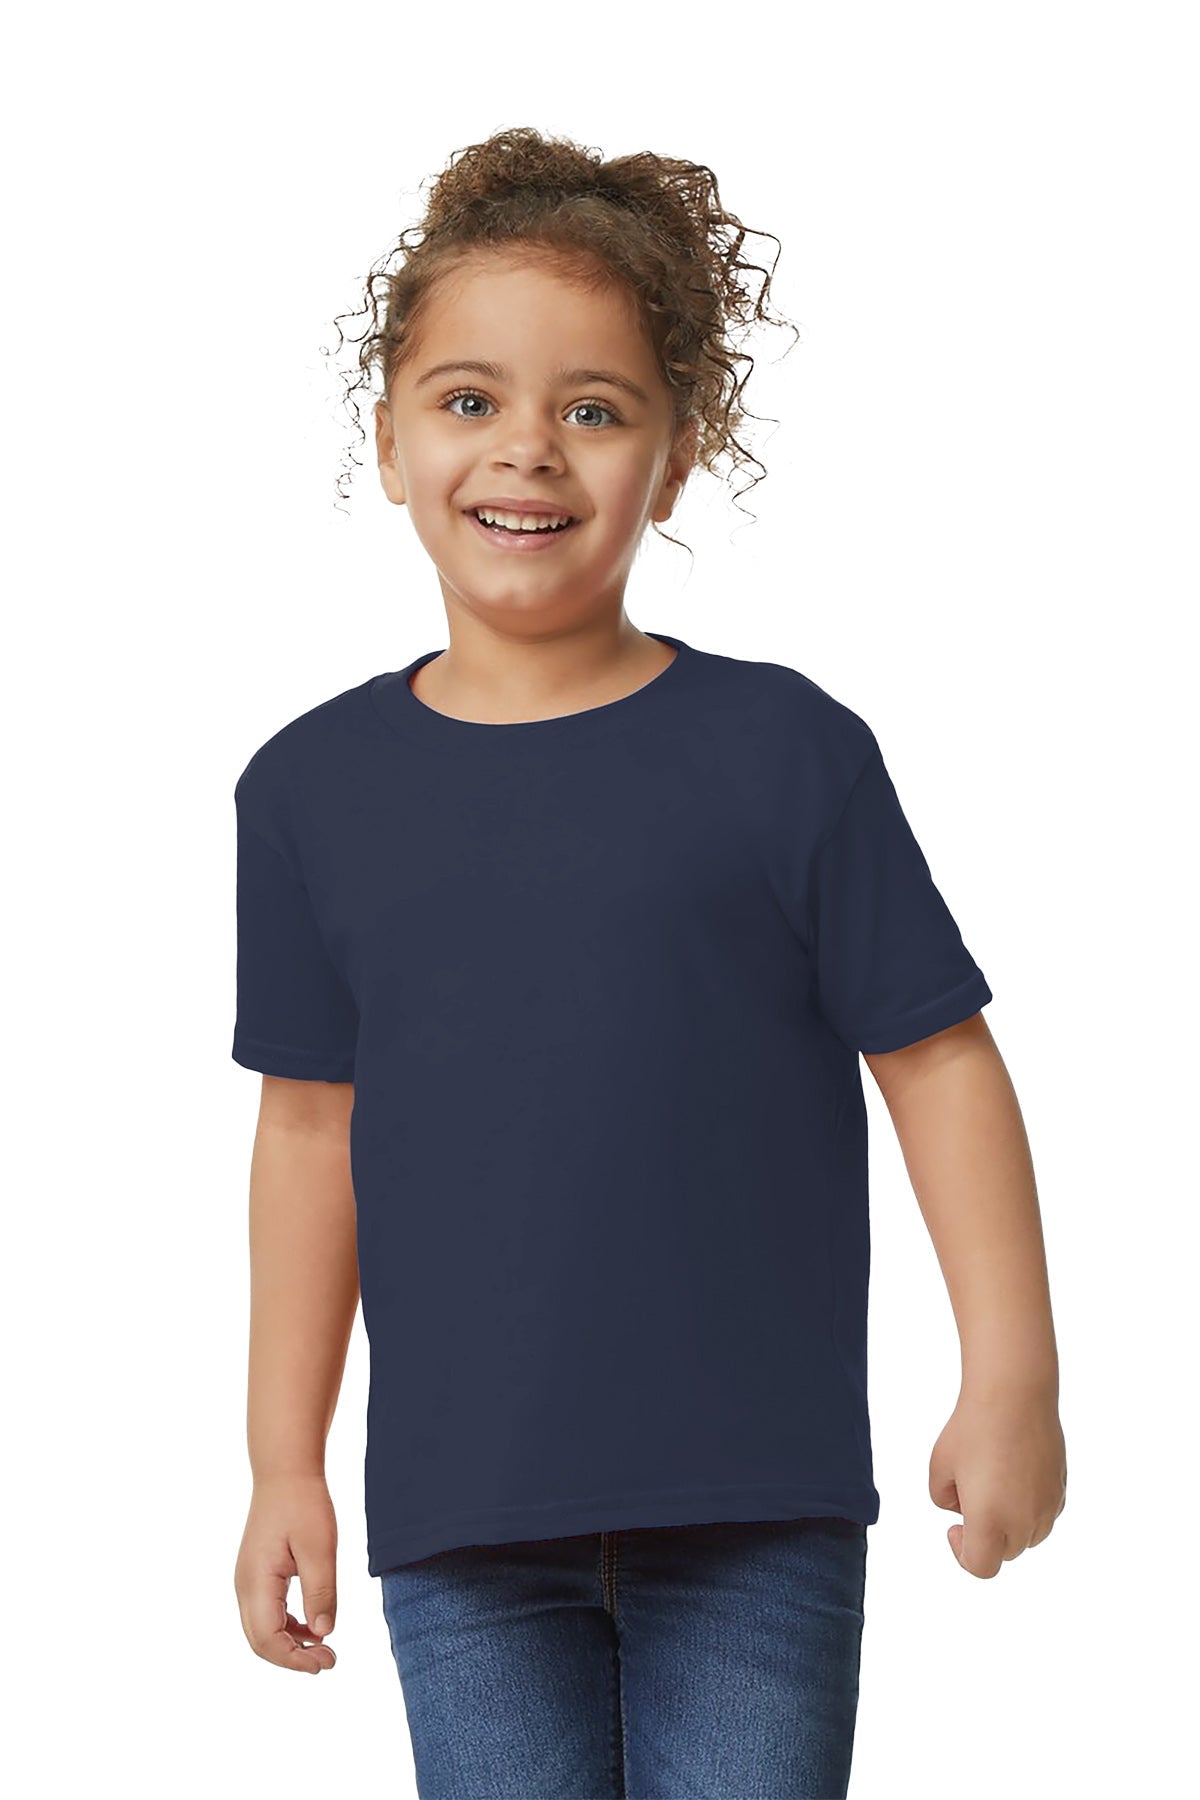 Gilden 5100P Toddler T-Shirt 3T / Navy